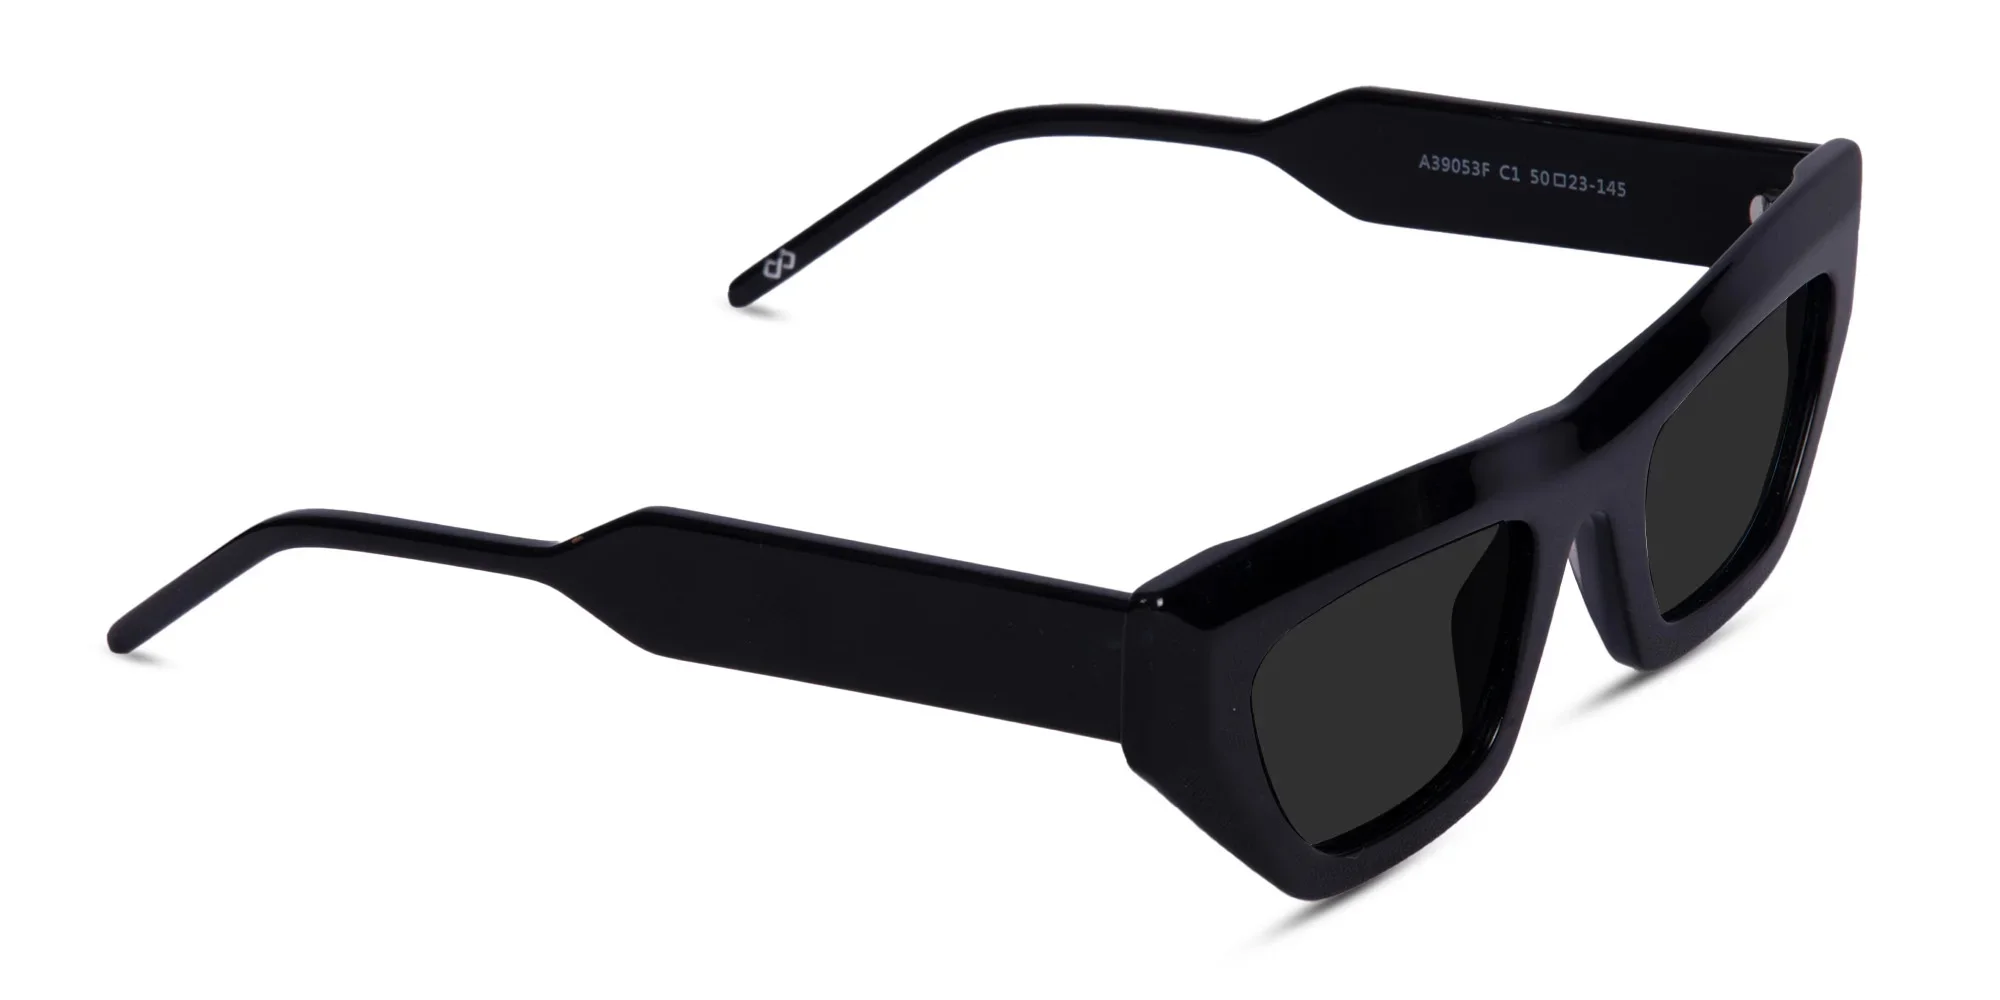 Black Cat Eye Designer Sunglasses -1